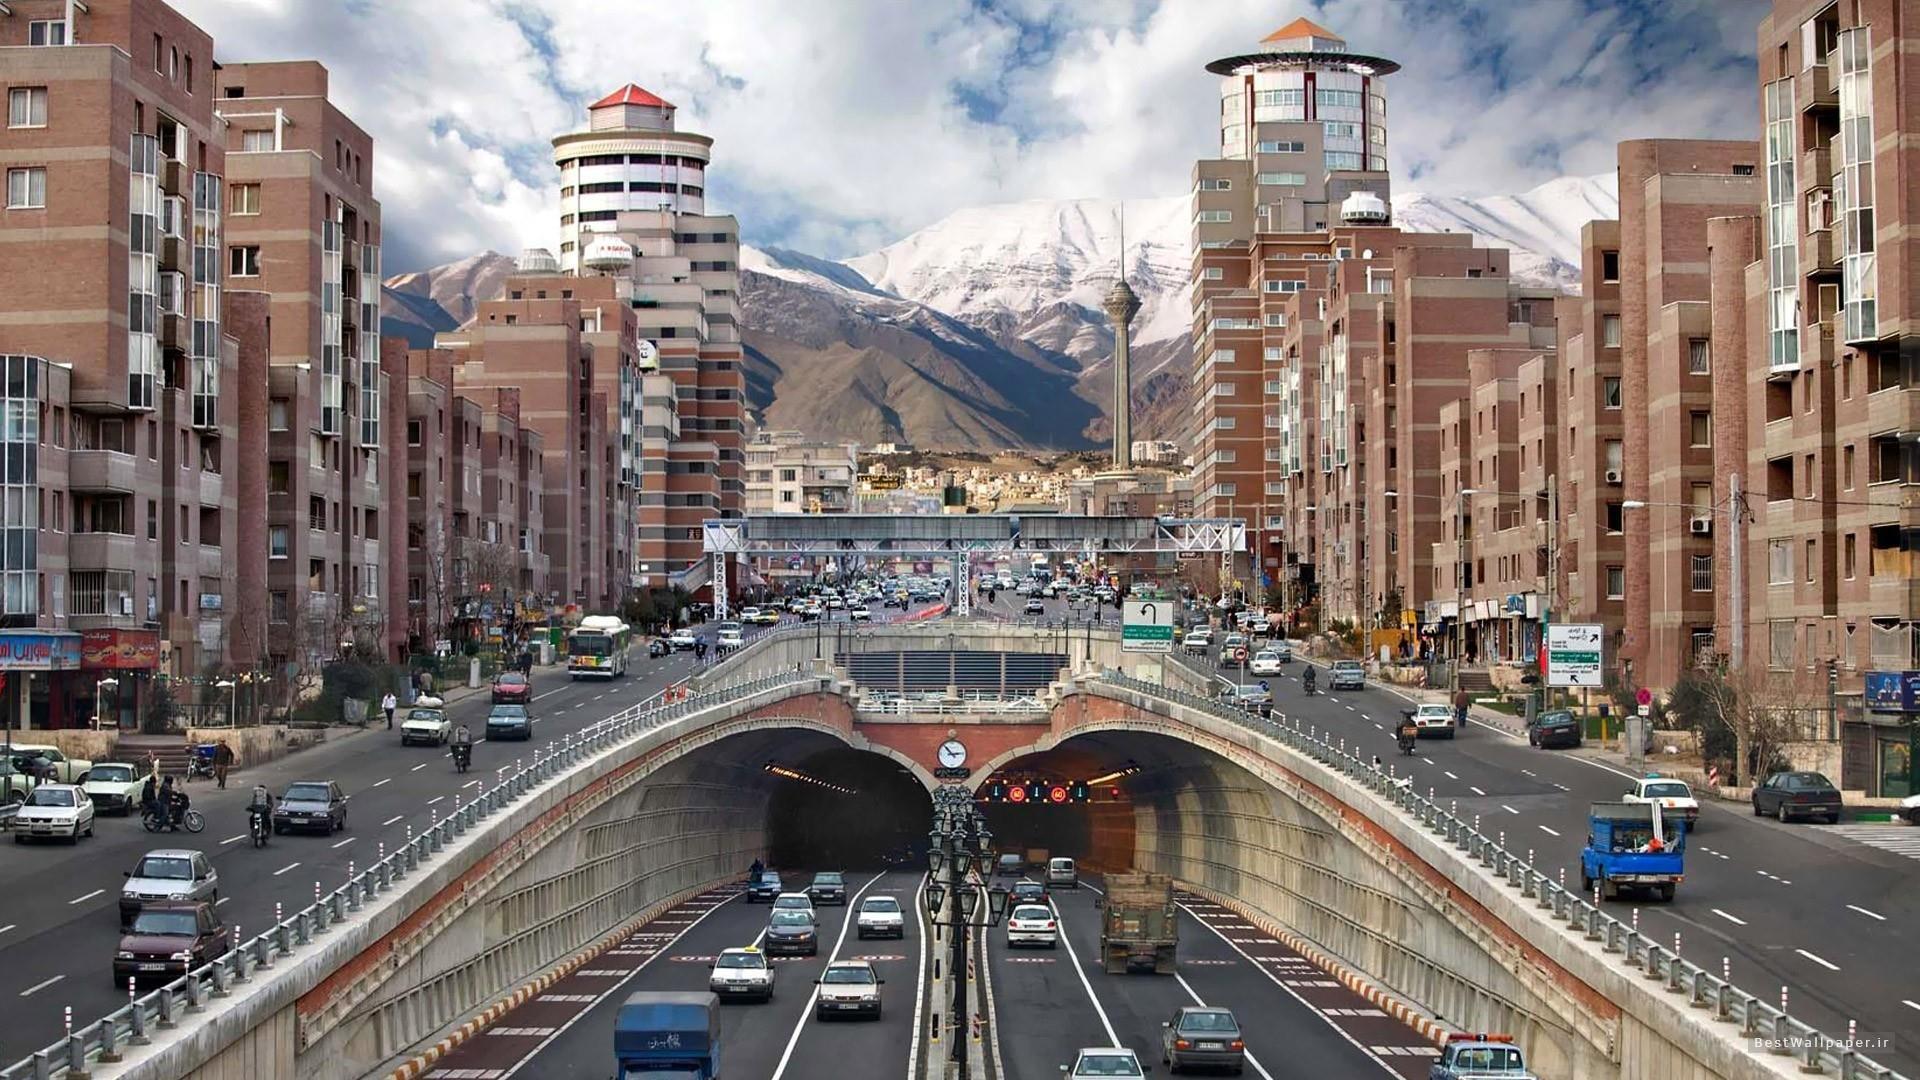 Iran Desktop Wallpapers Top Free Iran Desktop Backgrounds Images, Photos, Reviews